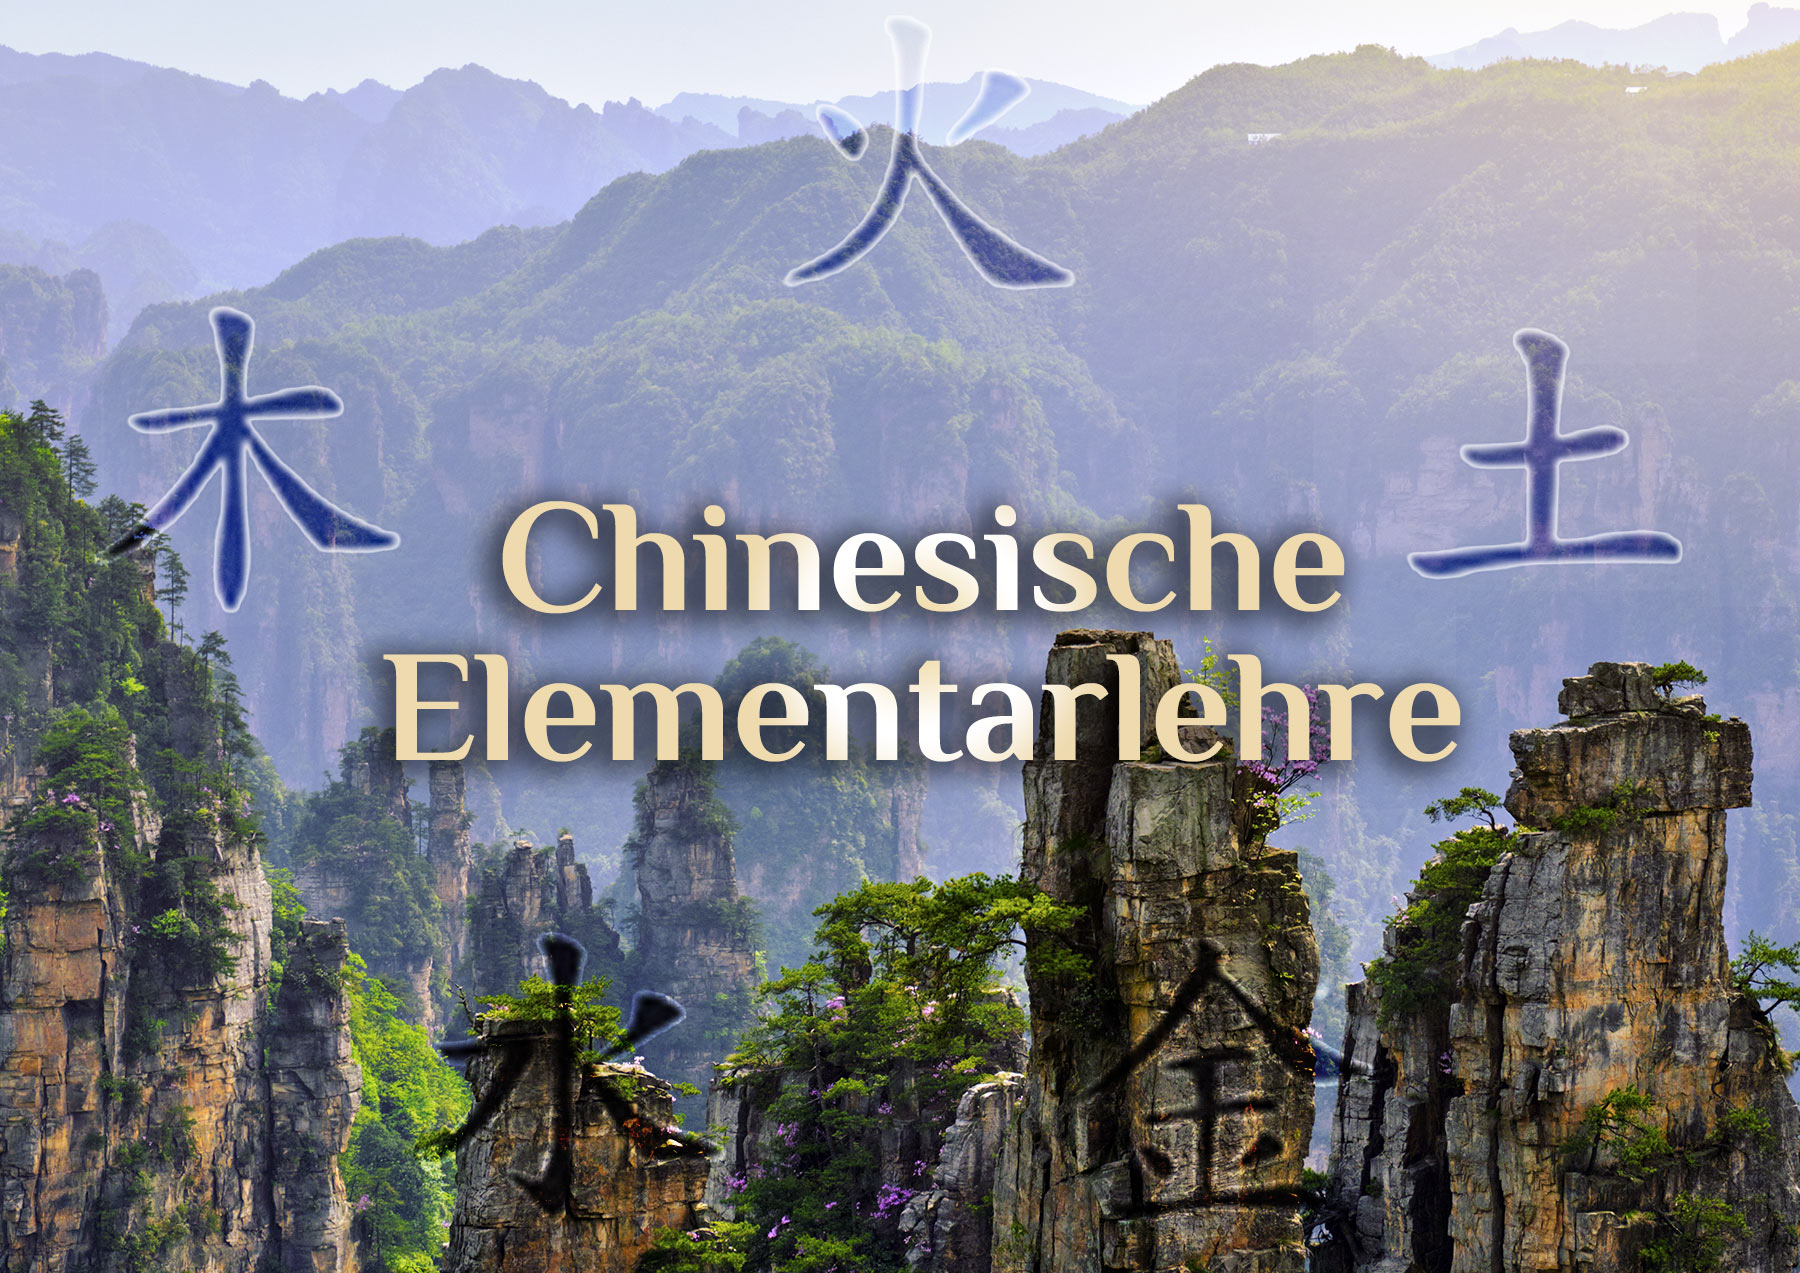 Elementarismus in China 🌀 Chinesische Elemente 🌀 Die 5 Elemente